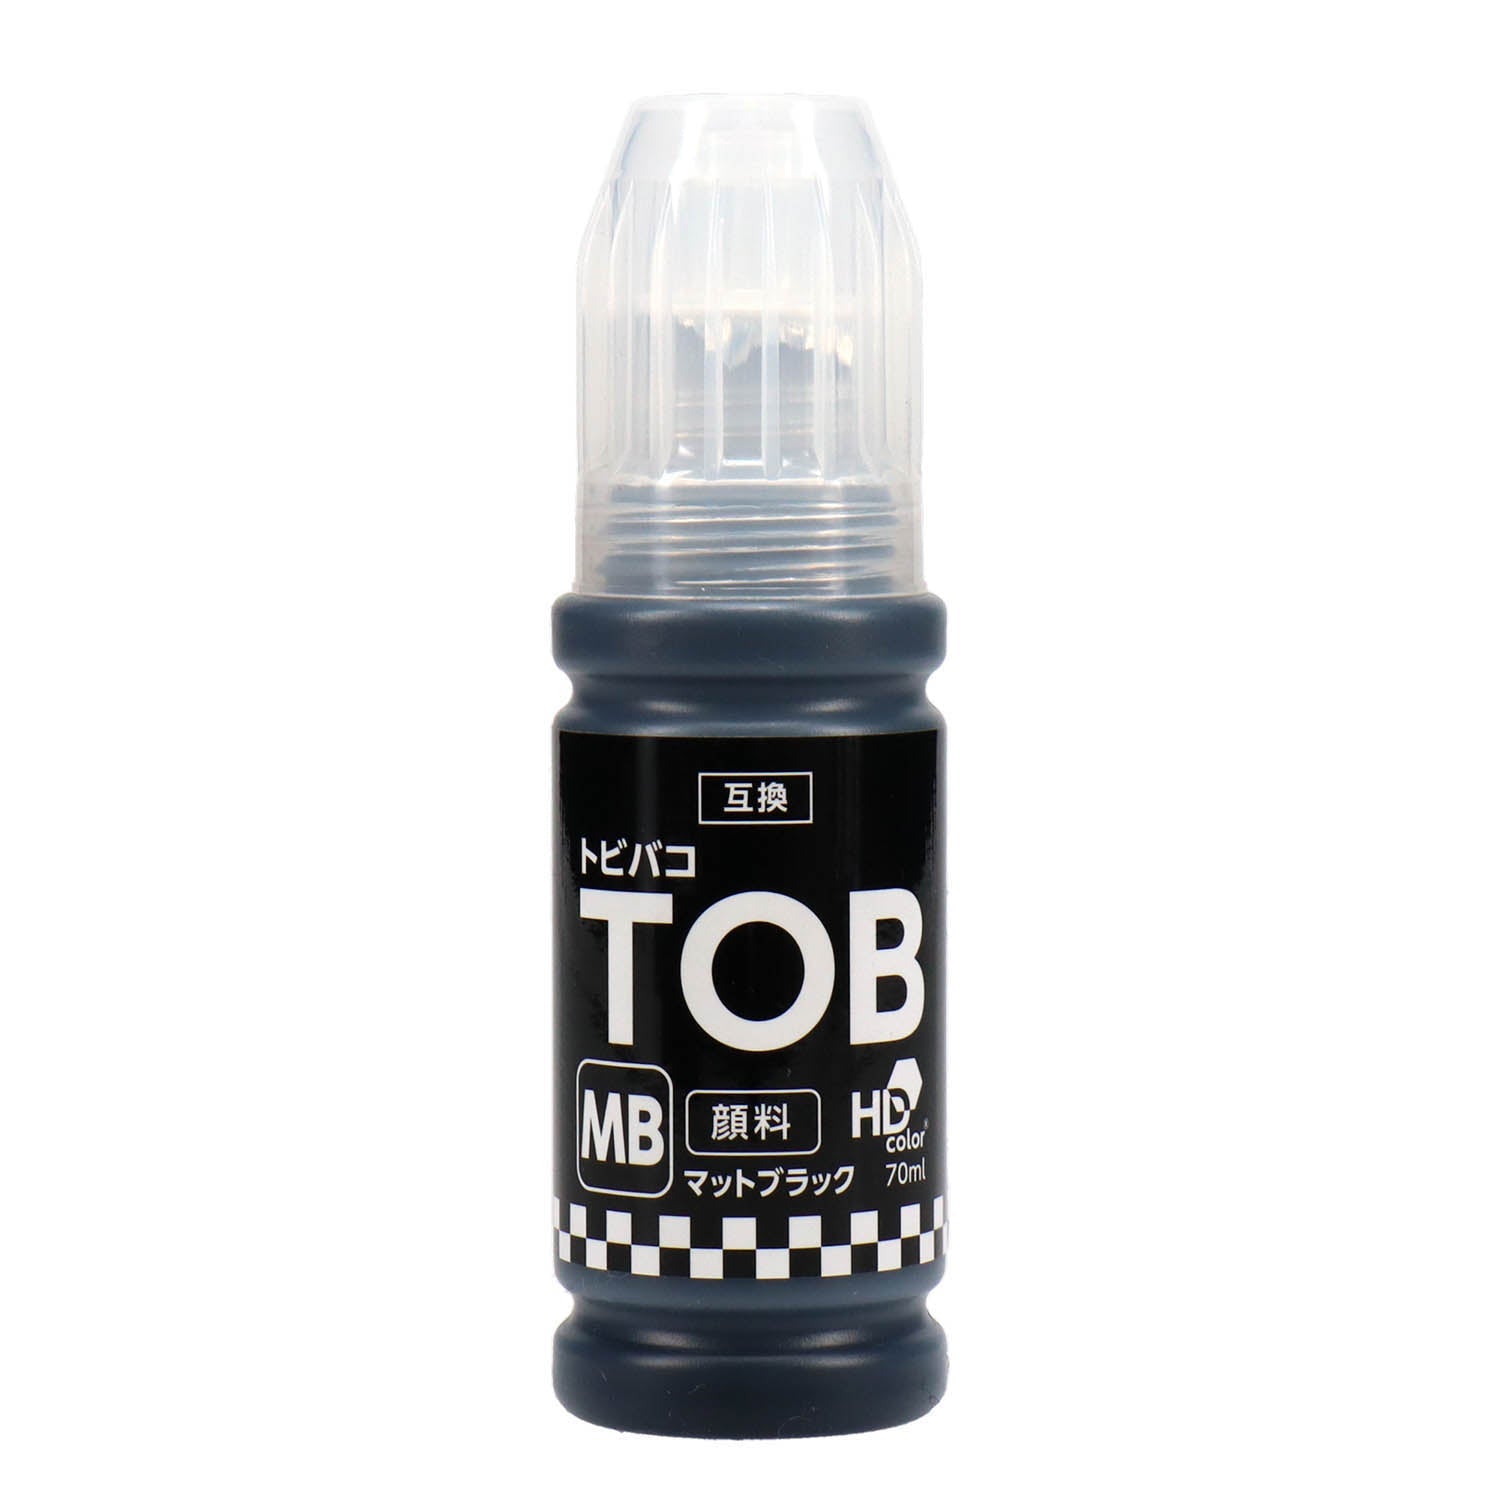 純正品エプソン インクボトル (トビバコ) TOB 5色セット (TOB-PB MB C M Y) - 4